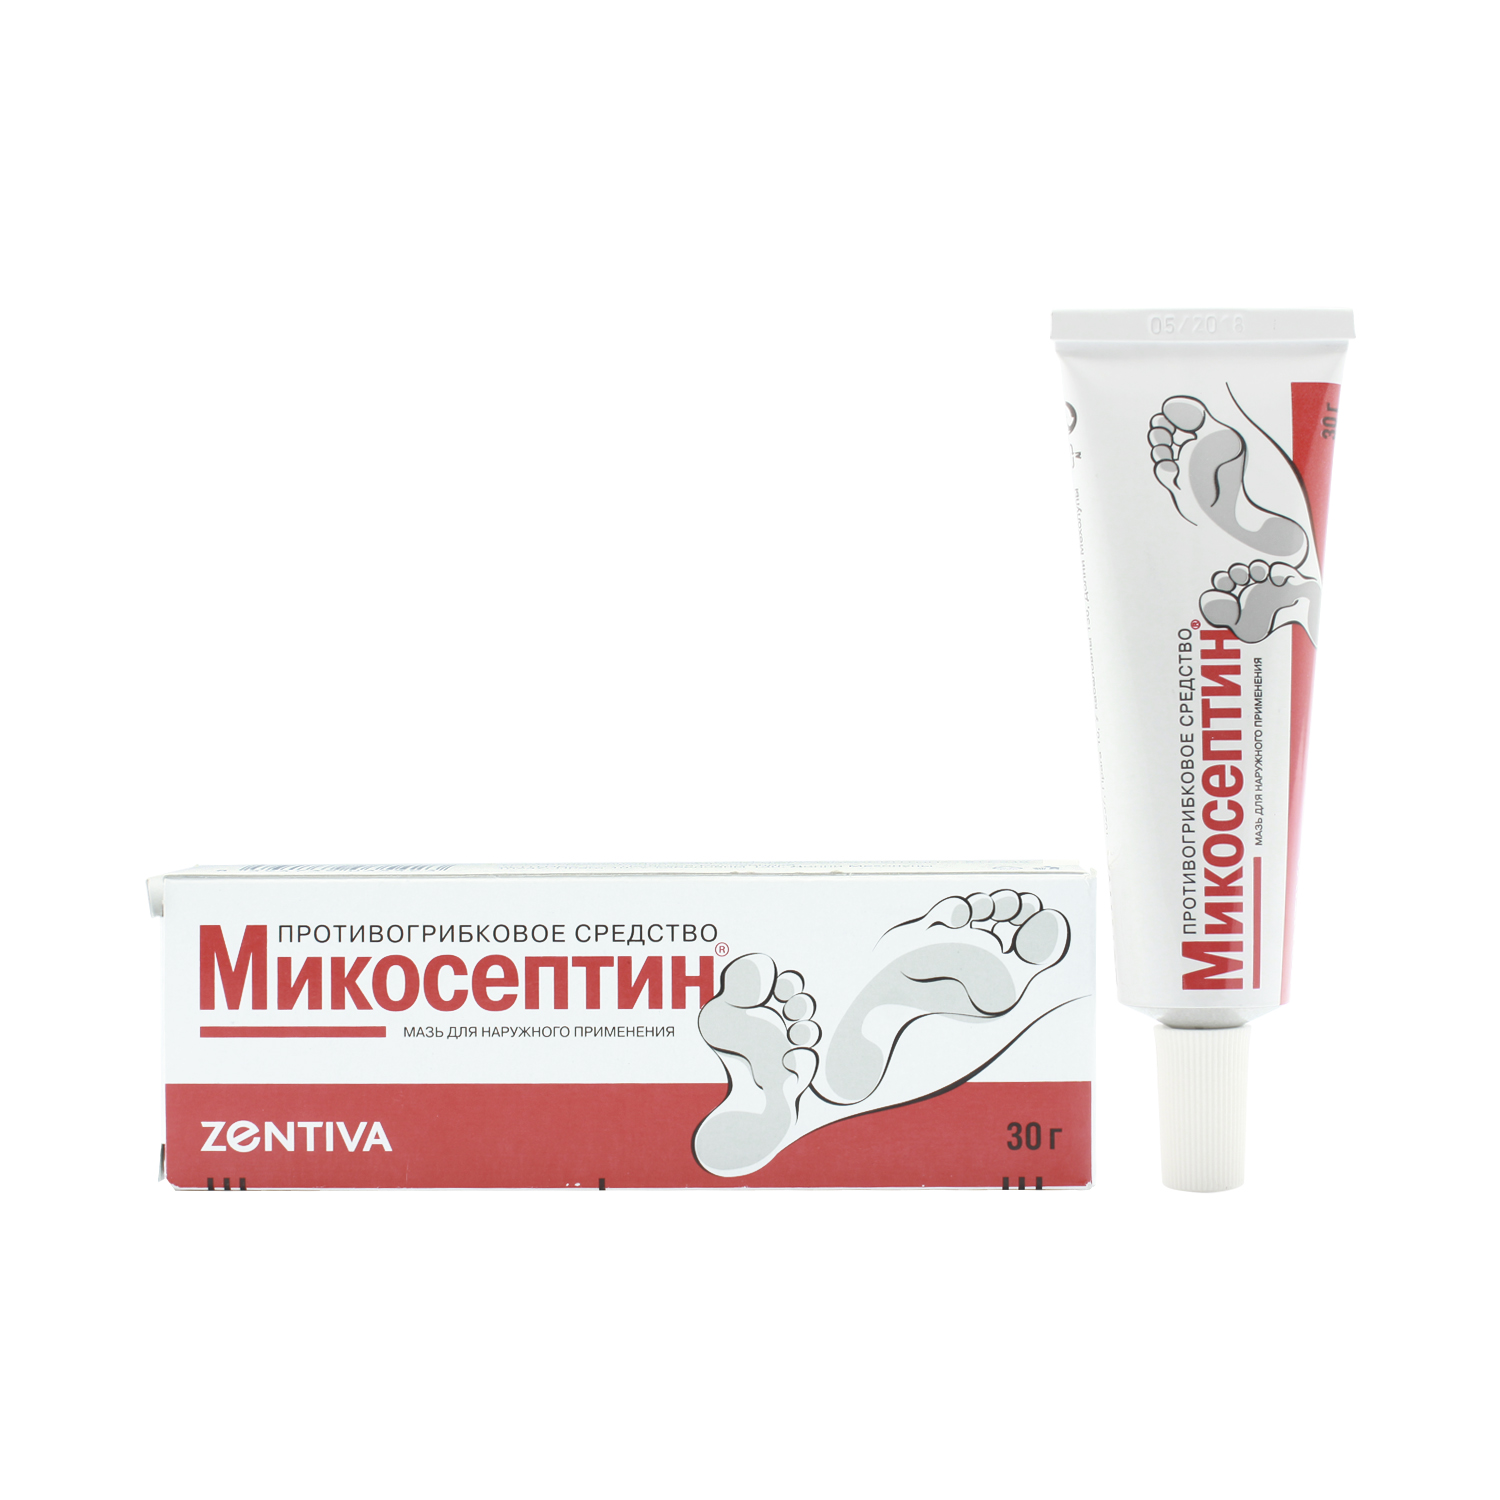 Микосептин Мазь 30 г  по цене 560,0 руб в интернет-аптеке в .